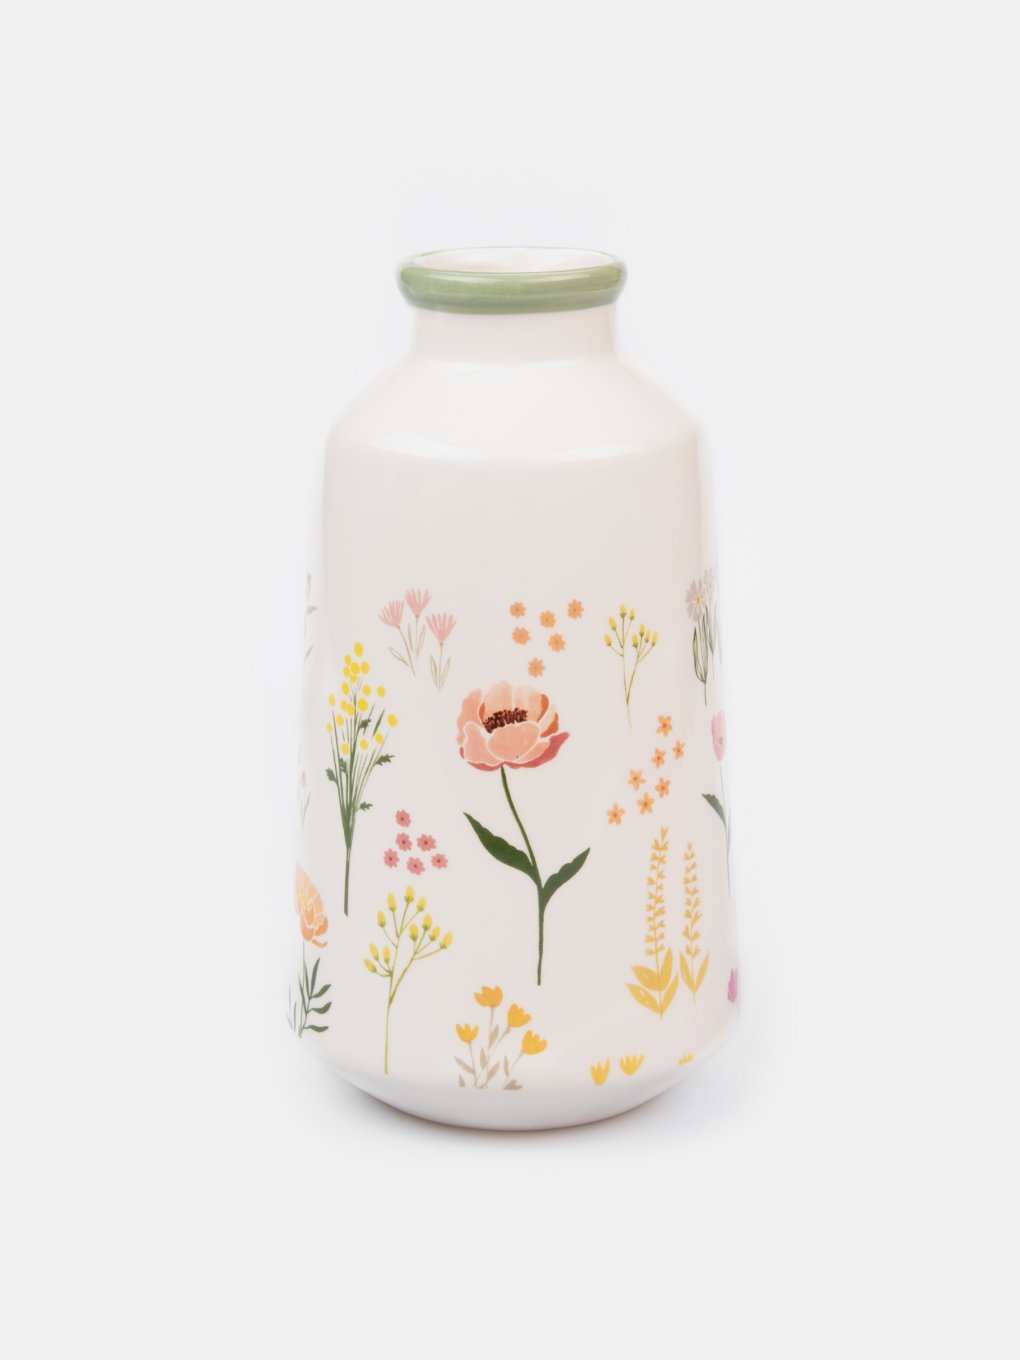 Vase with floral design